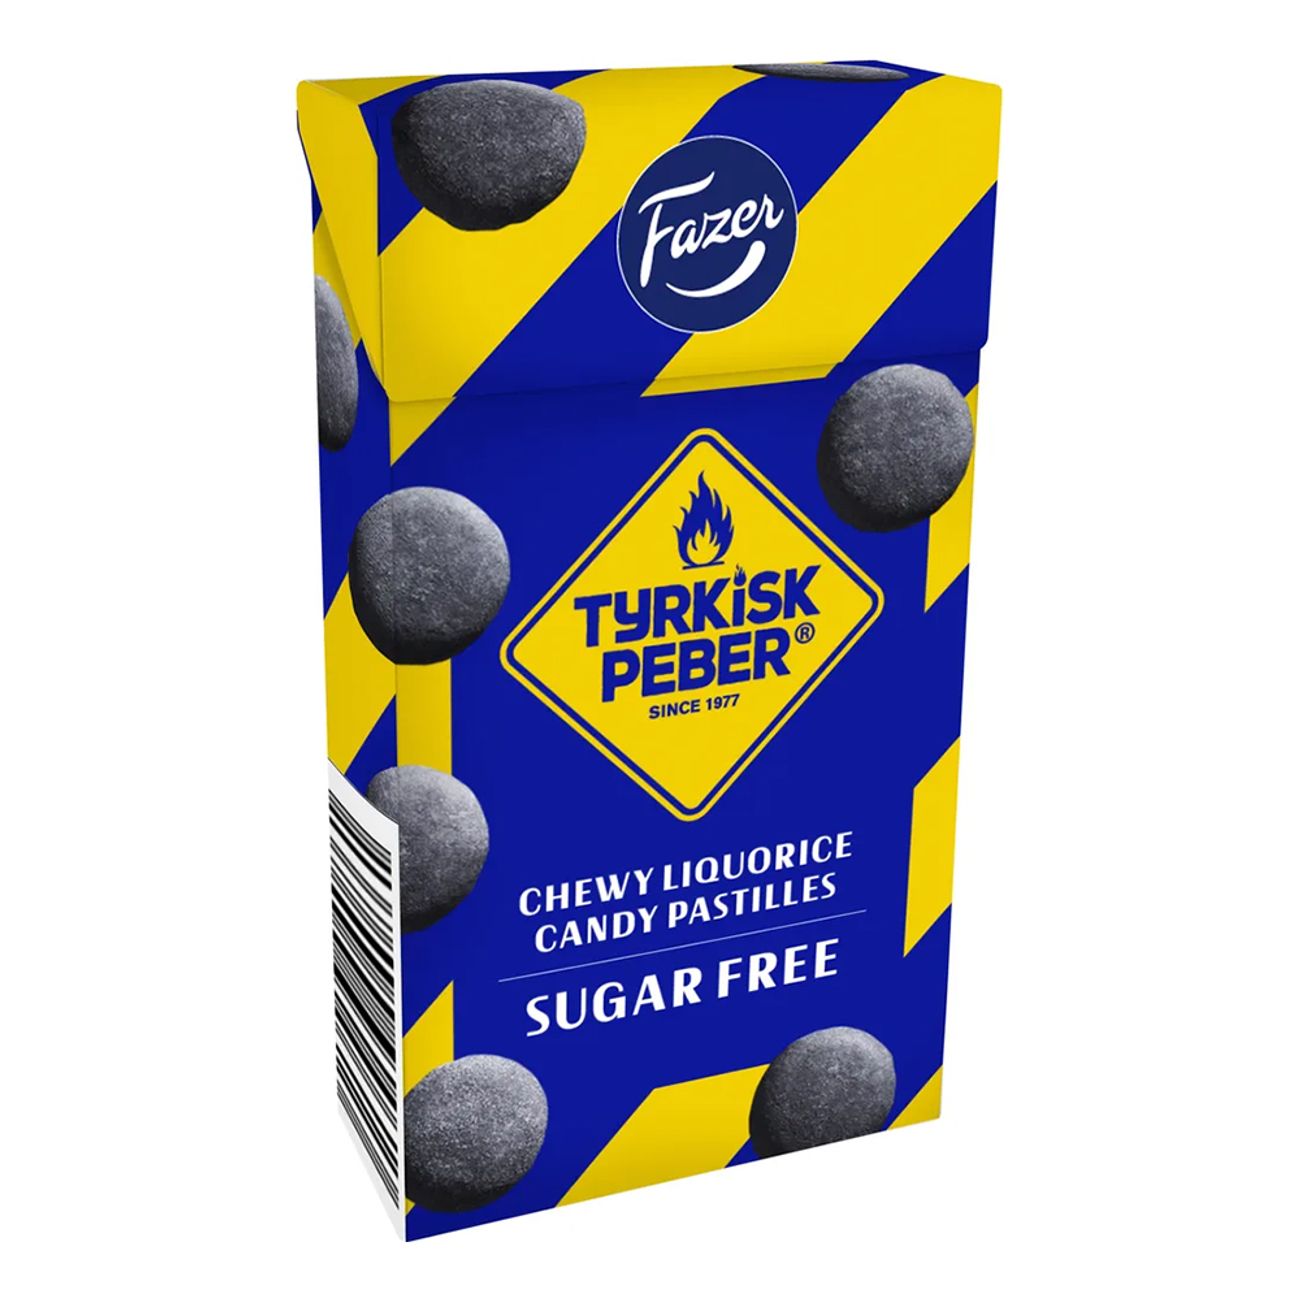 tyrkisk-peber-sockerfria-pastiller-99815-1